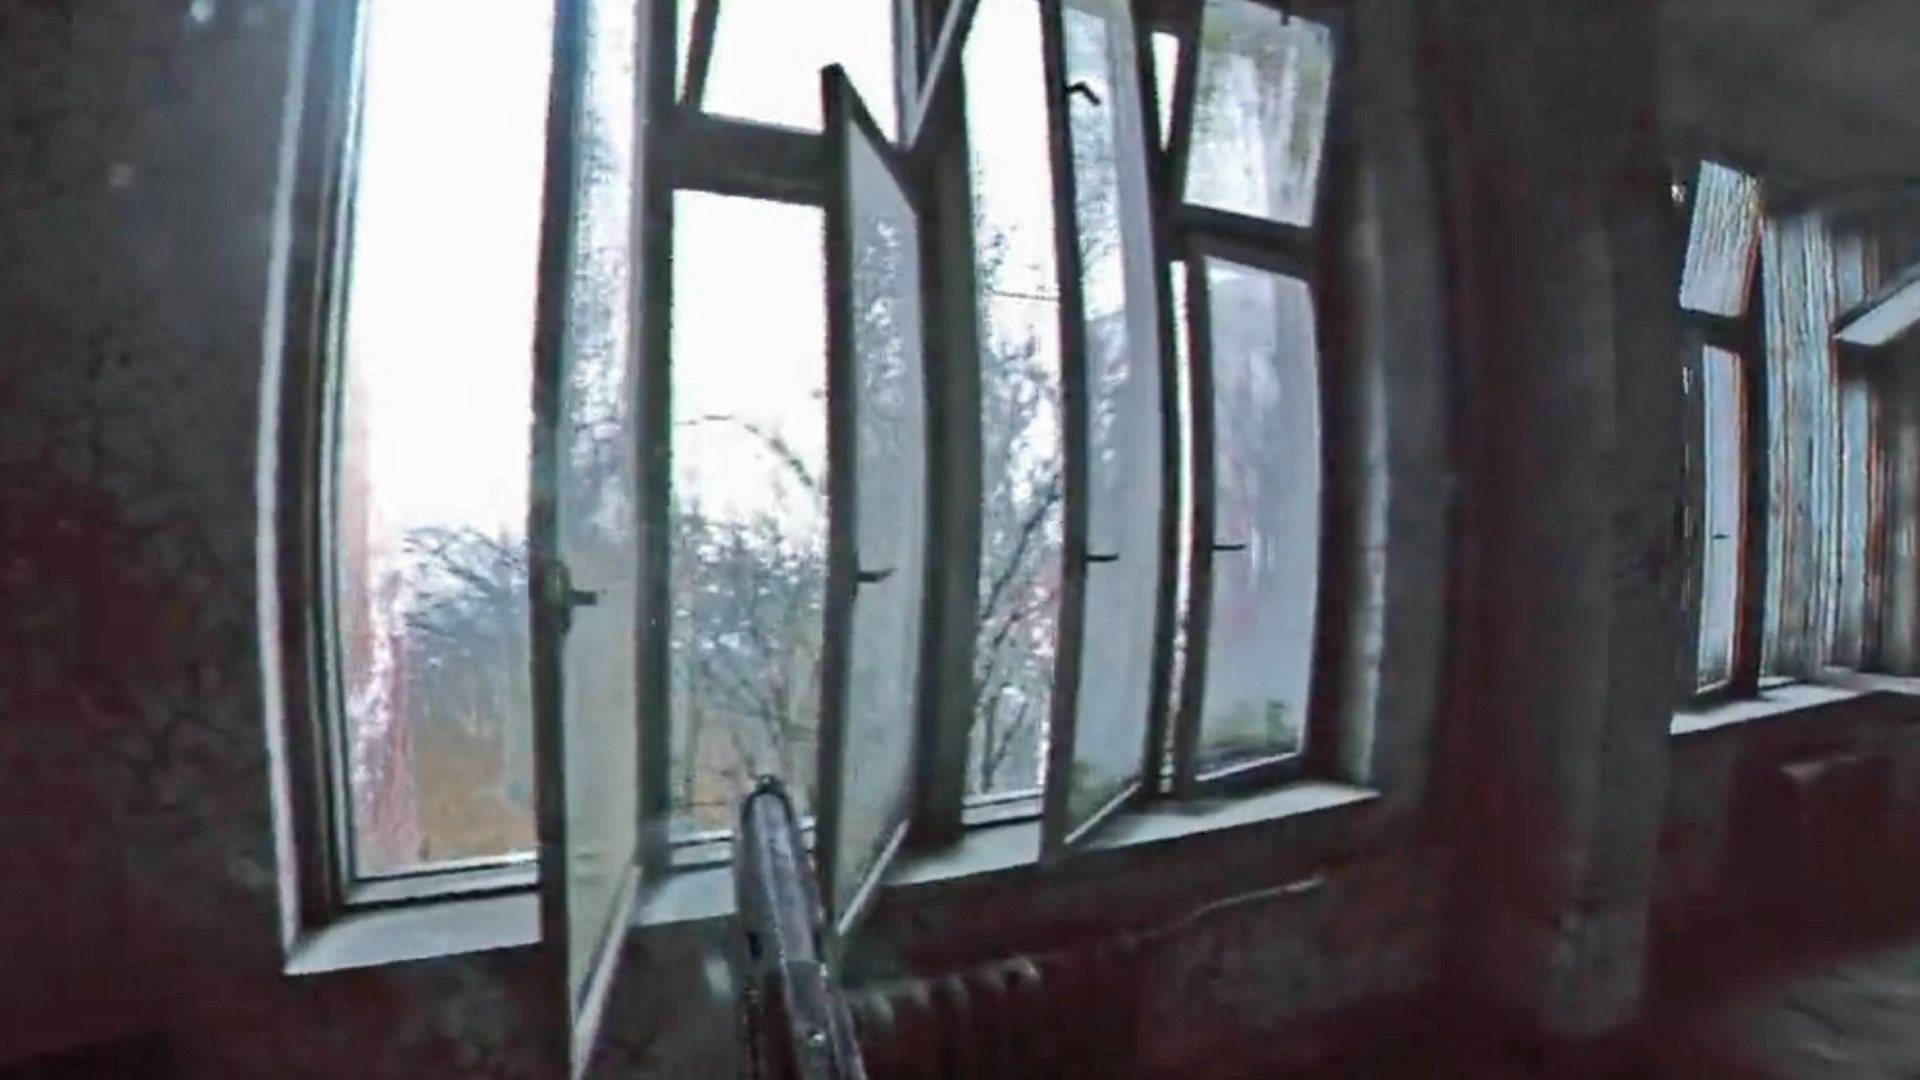  (Отражения на окнах, вездесущая грязь, эффект HDR от входящего света: Безымянный стрелок с телекамеры Александра Спиндлера выглядит великолепно.)